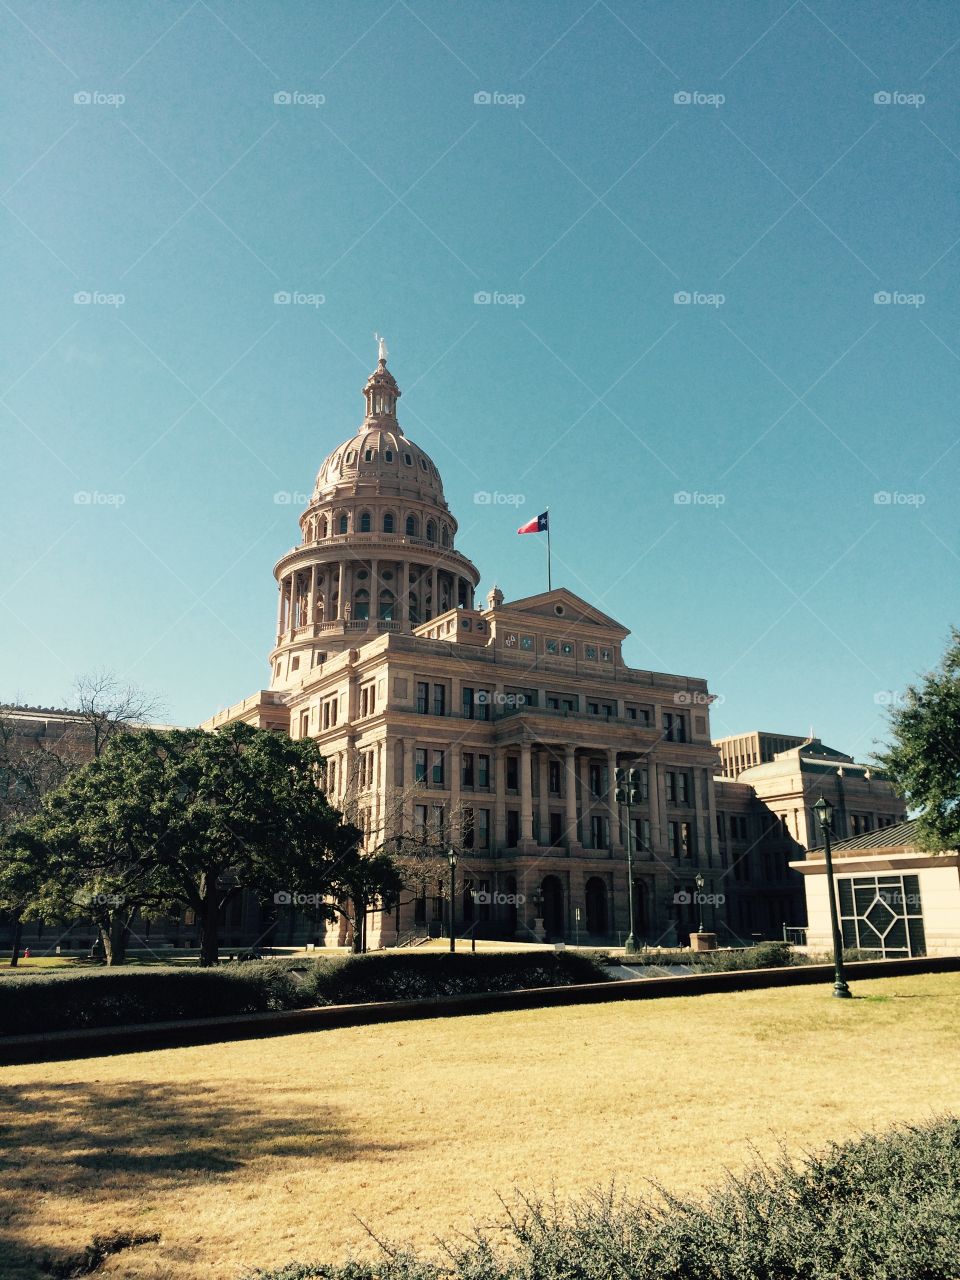 Austin Texas Capital Building